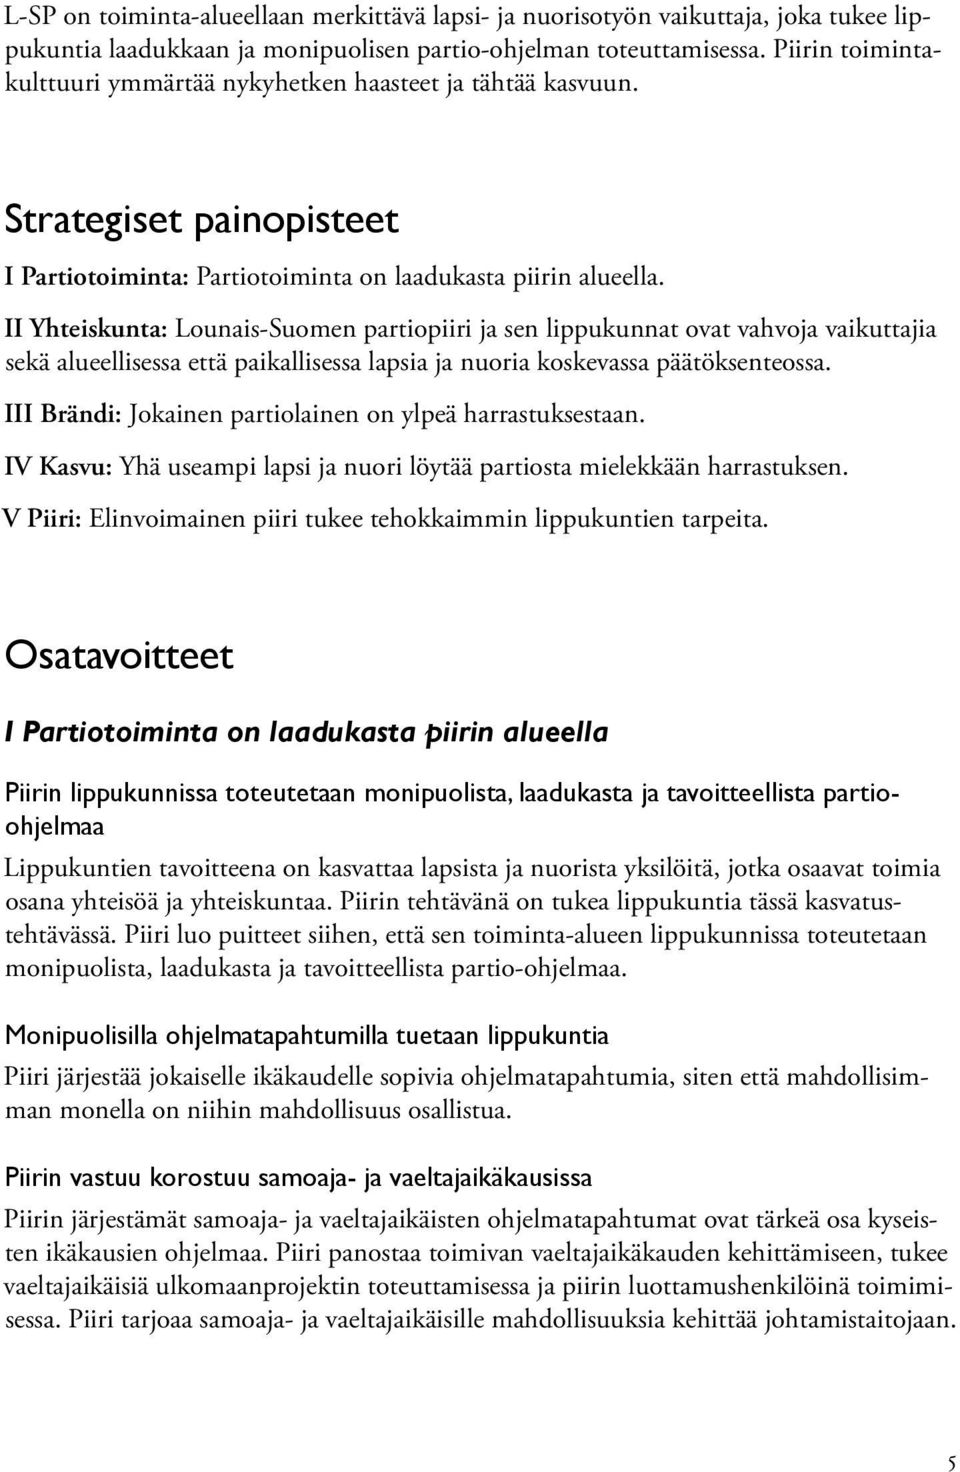 II Yhteiskunta: Lounais-Suomen partiopiiri ja sen lippukunnat ovat vahvoja vaikuttajia sekä alueellisessa että paikallisessa lapsia ja nuoria koskevassa päätöksenteossa.